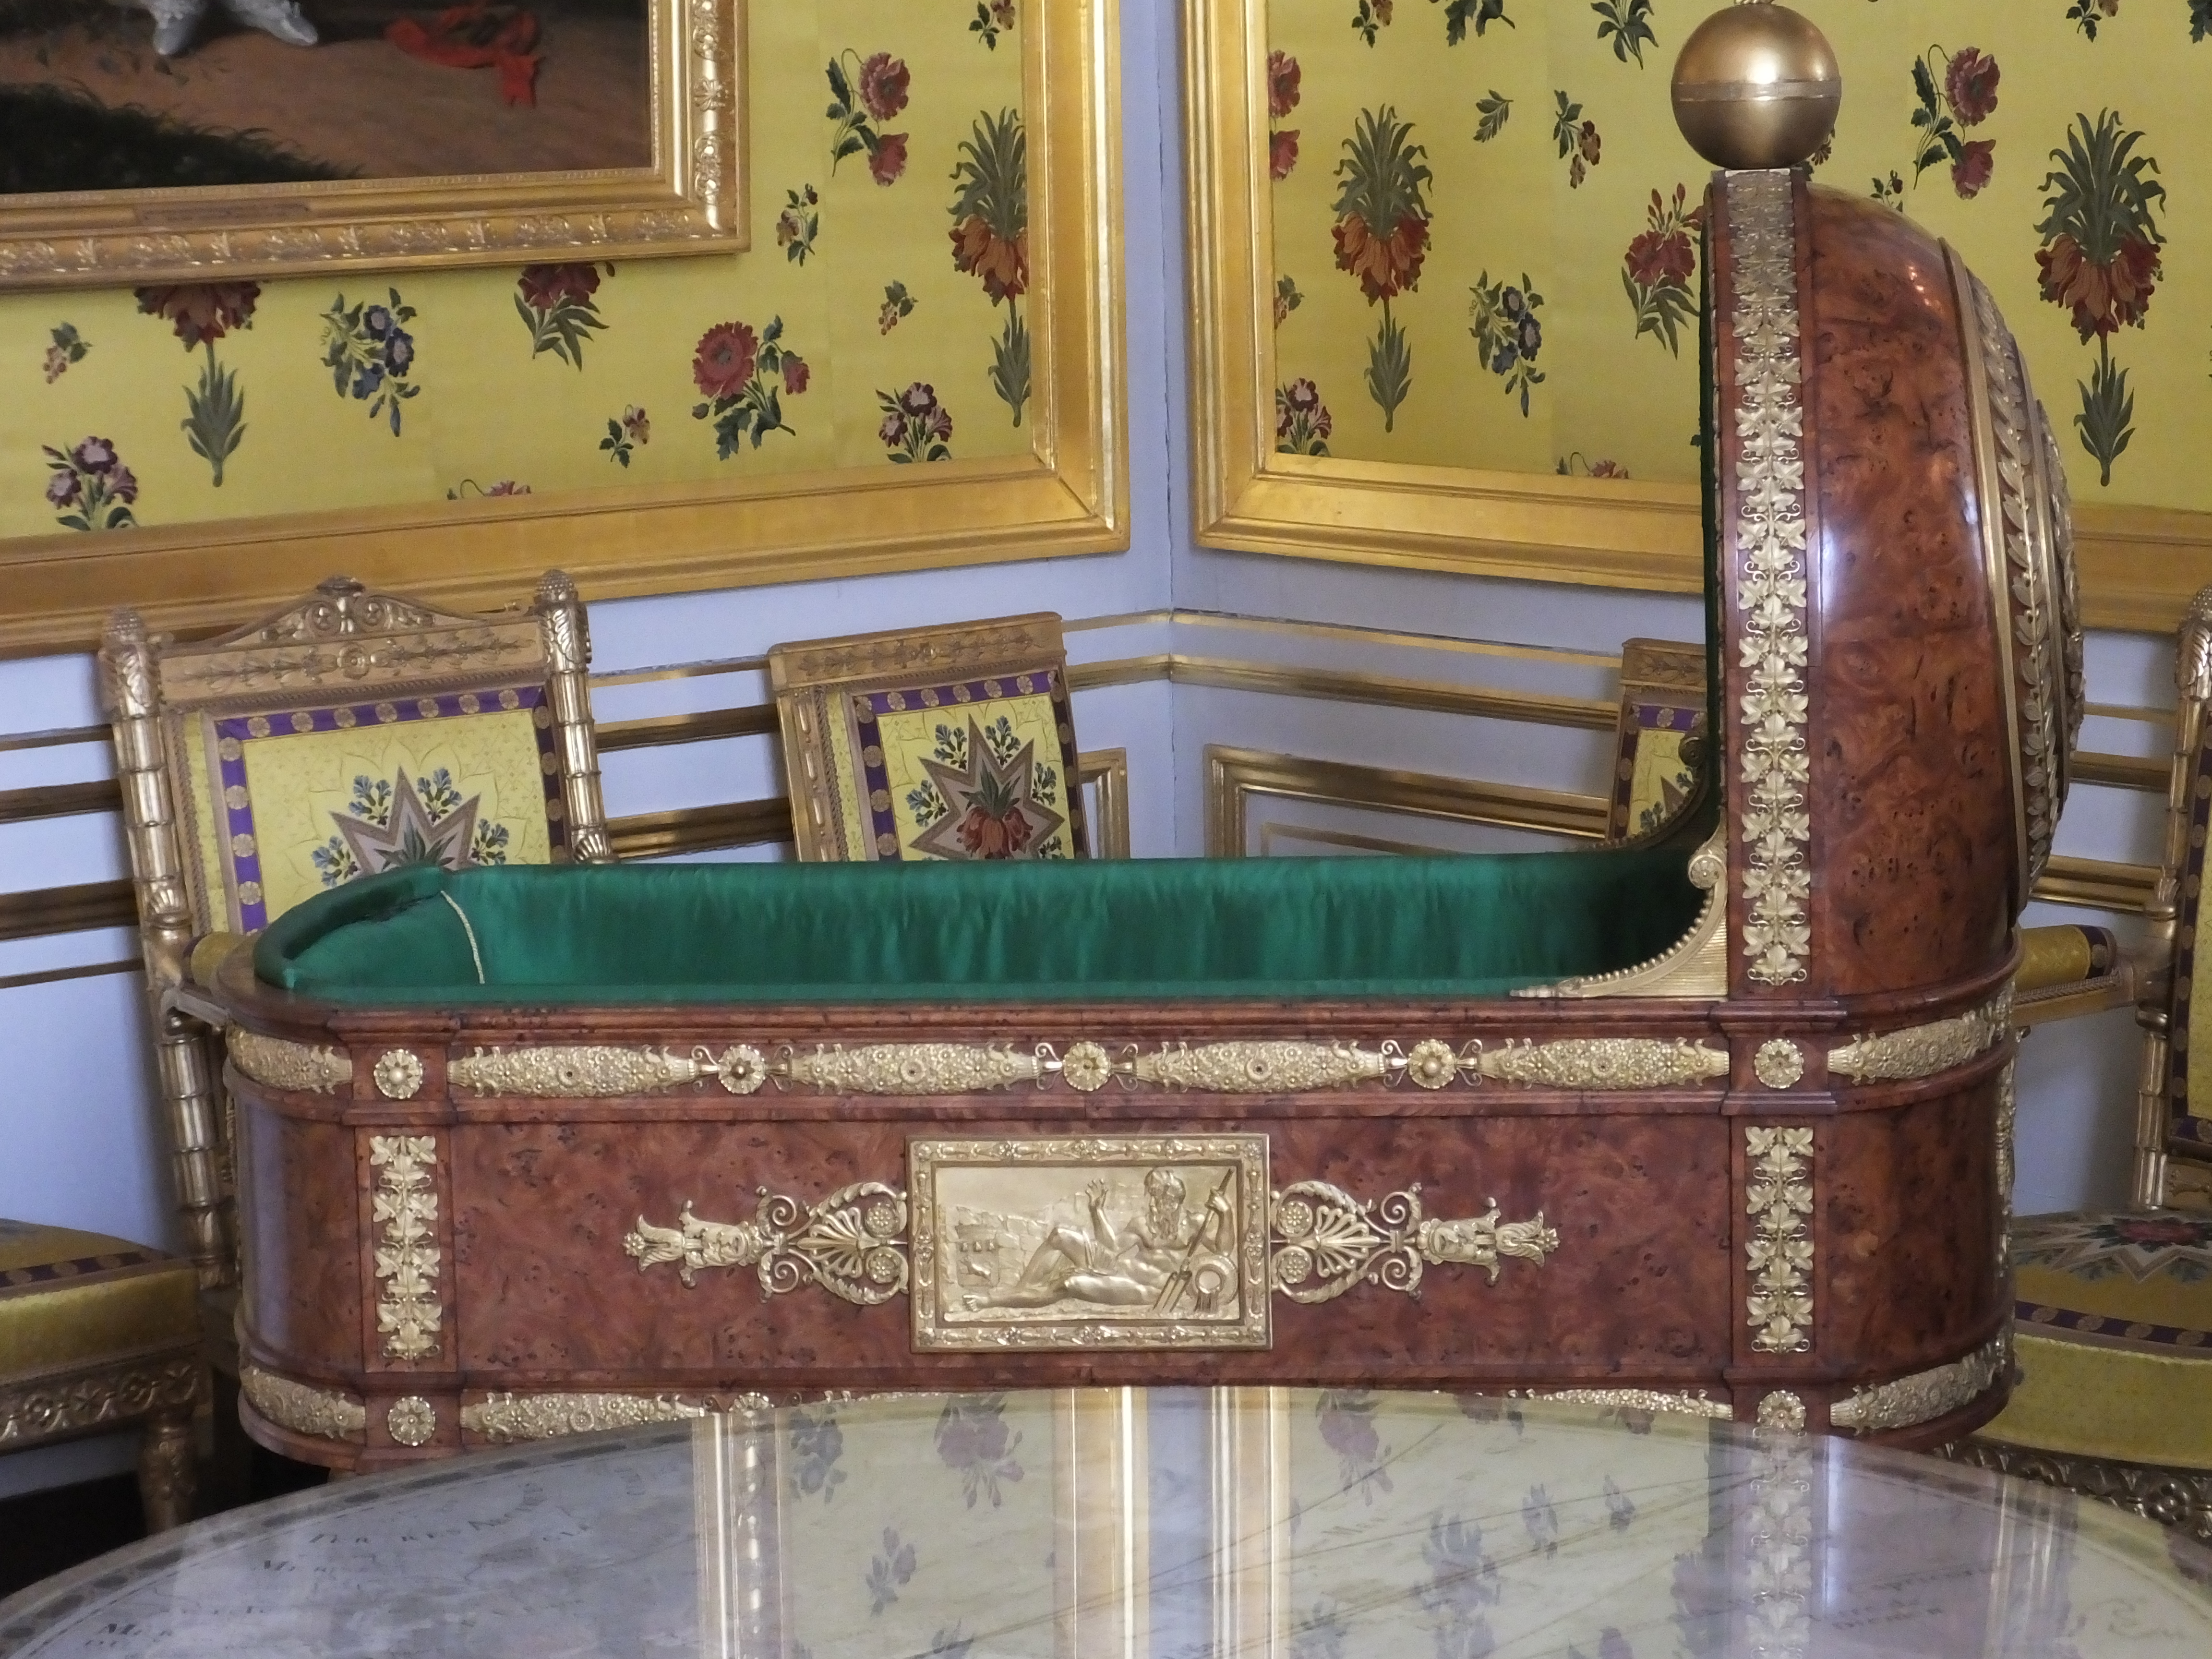 The crib for Napoleon's son